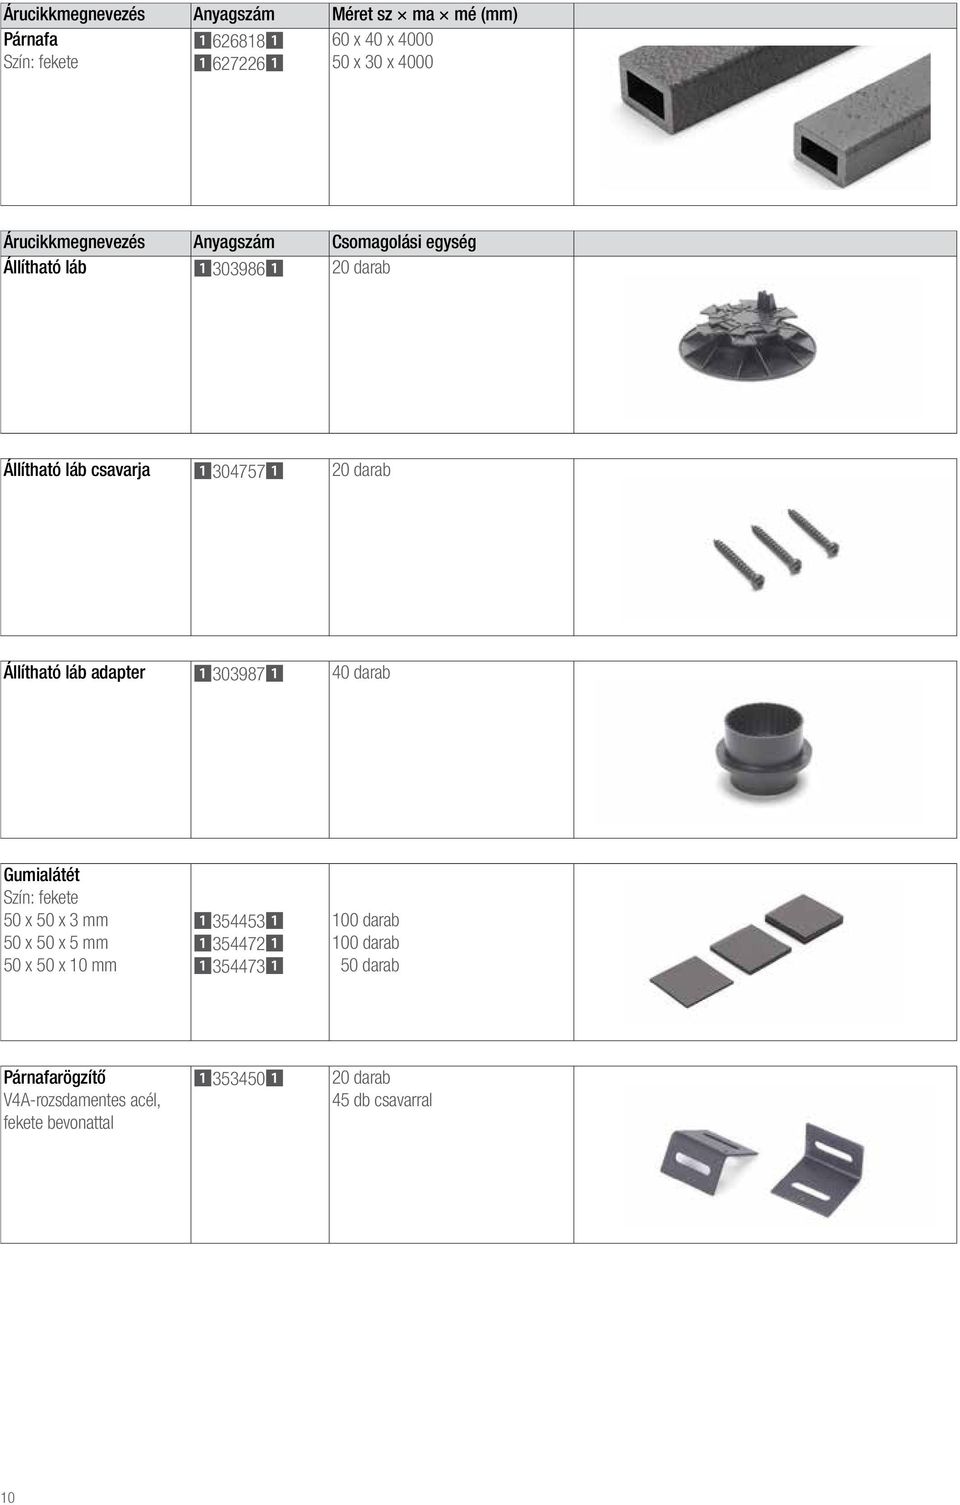 Állítható láb adapter 13039871 40 darab Gumialátét Szín: fekete 50 x 50 x 3 mm 50 x 50 x 5 mm 50 x 50 x 10 mm 13544531